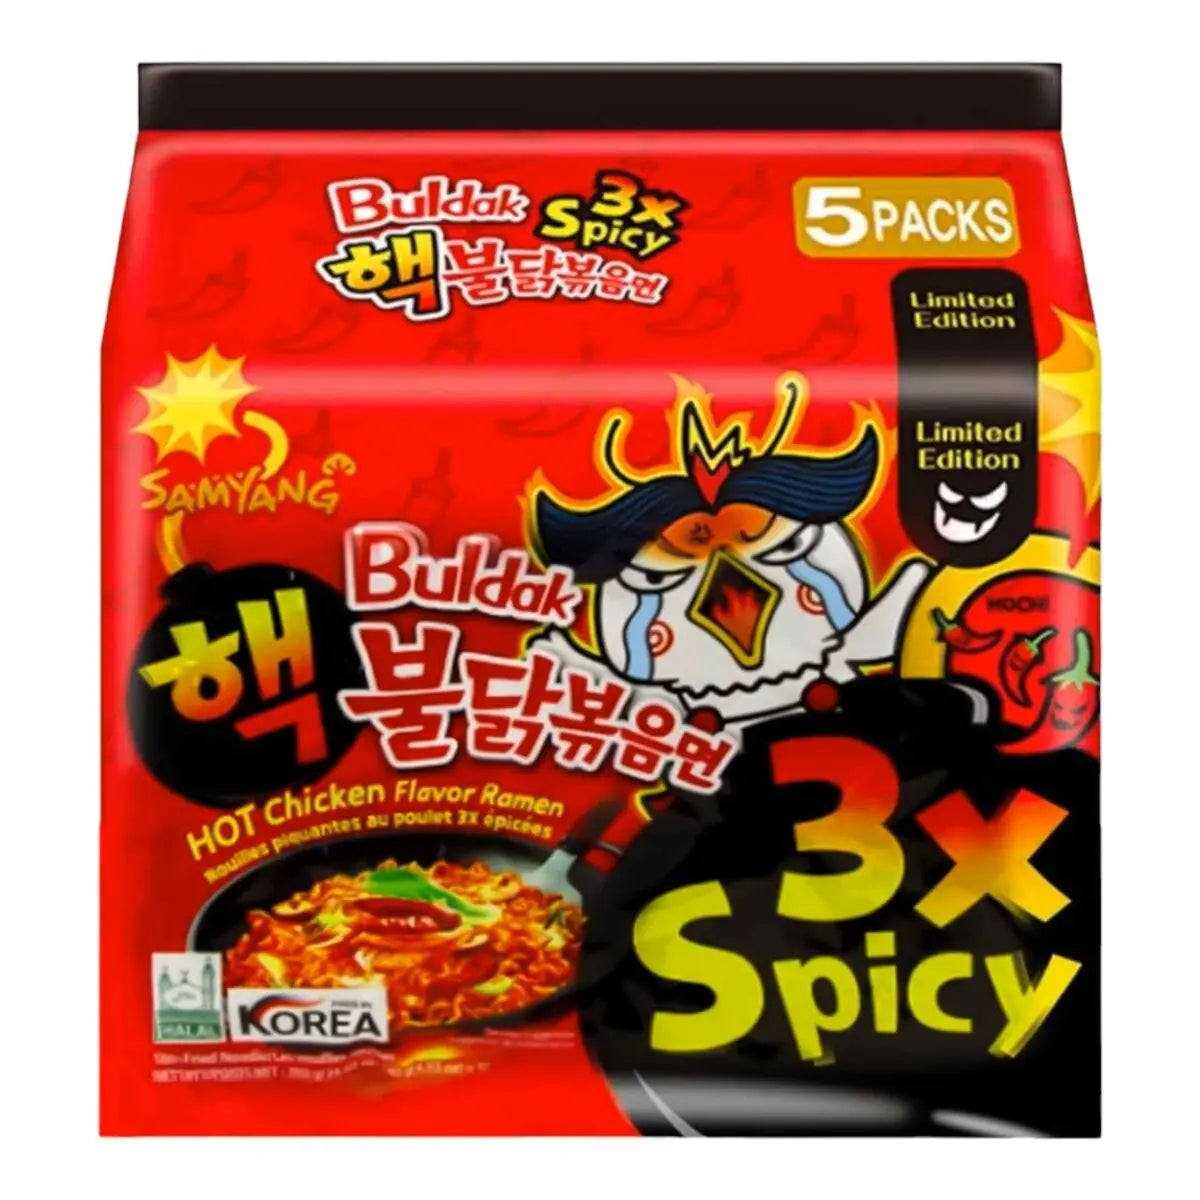 Samyang Buldak 3x Spicy Hot Chicken Flavor Ramen 5 X140g 700g 2999